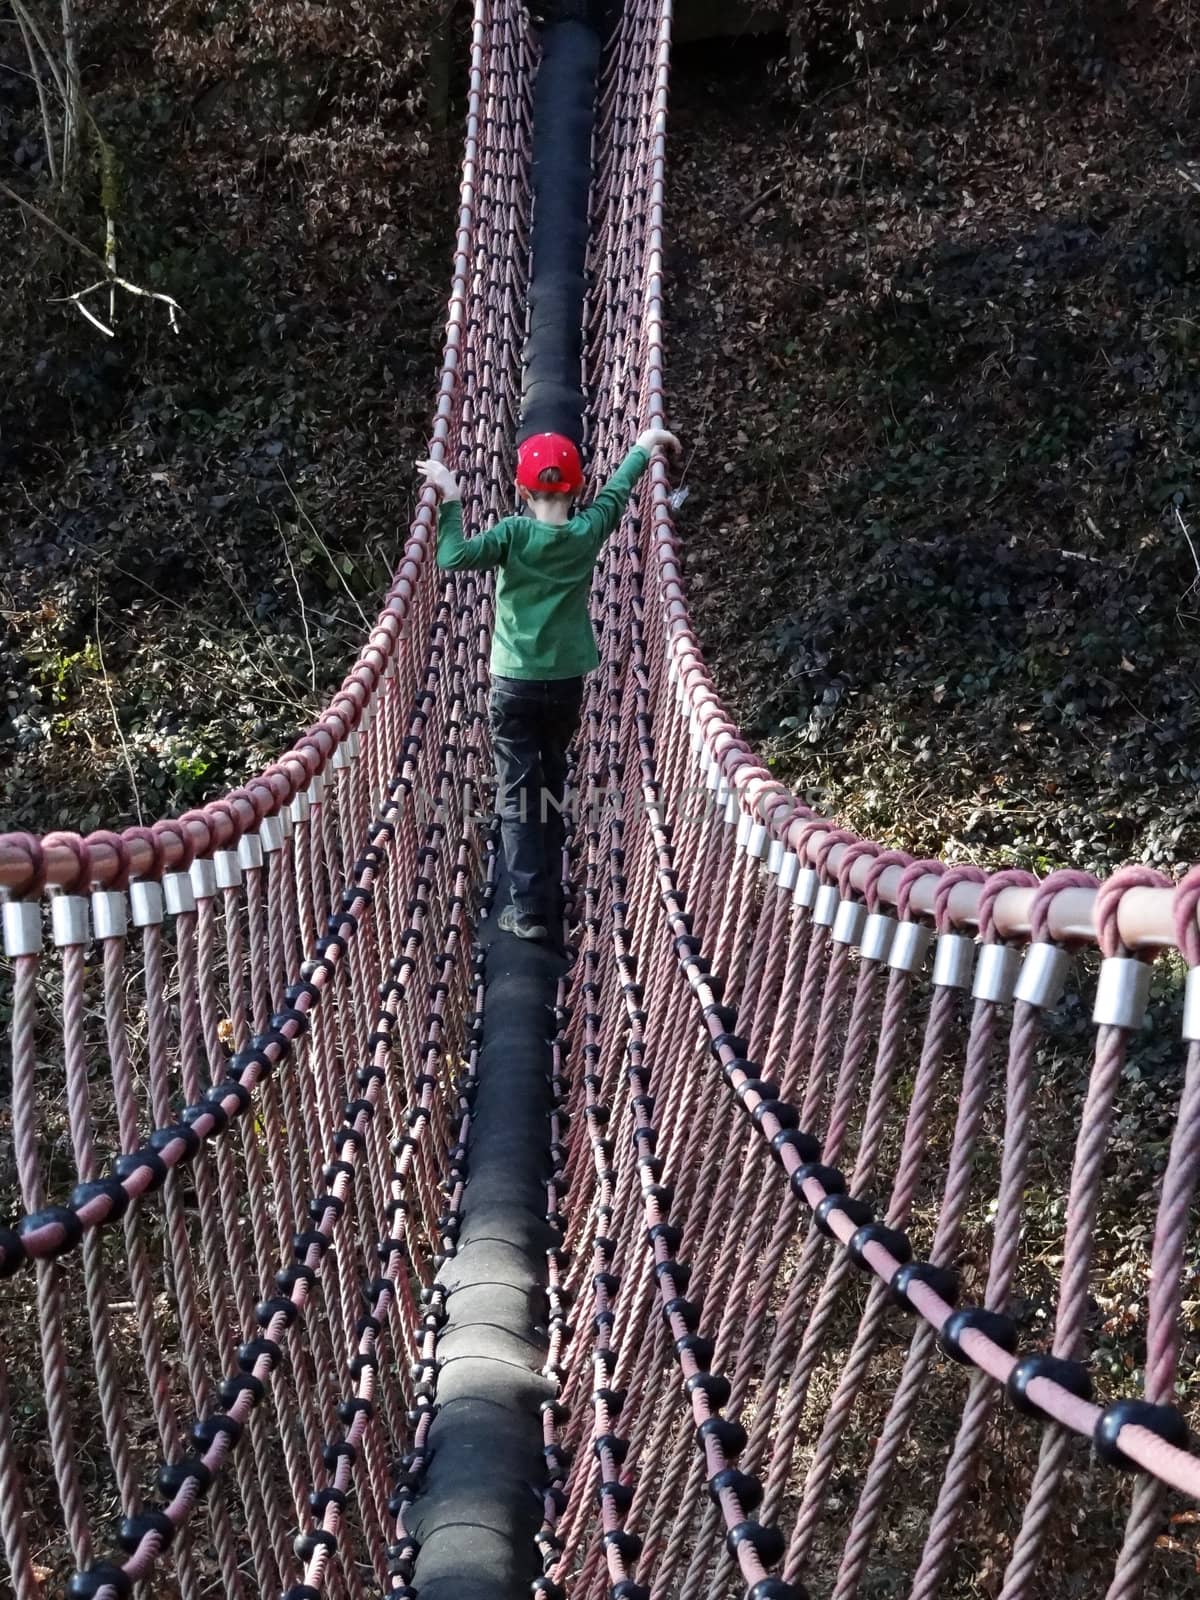 A boy walks on a swing bridge